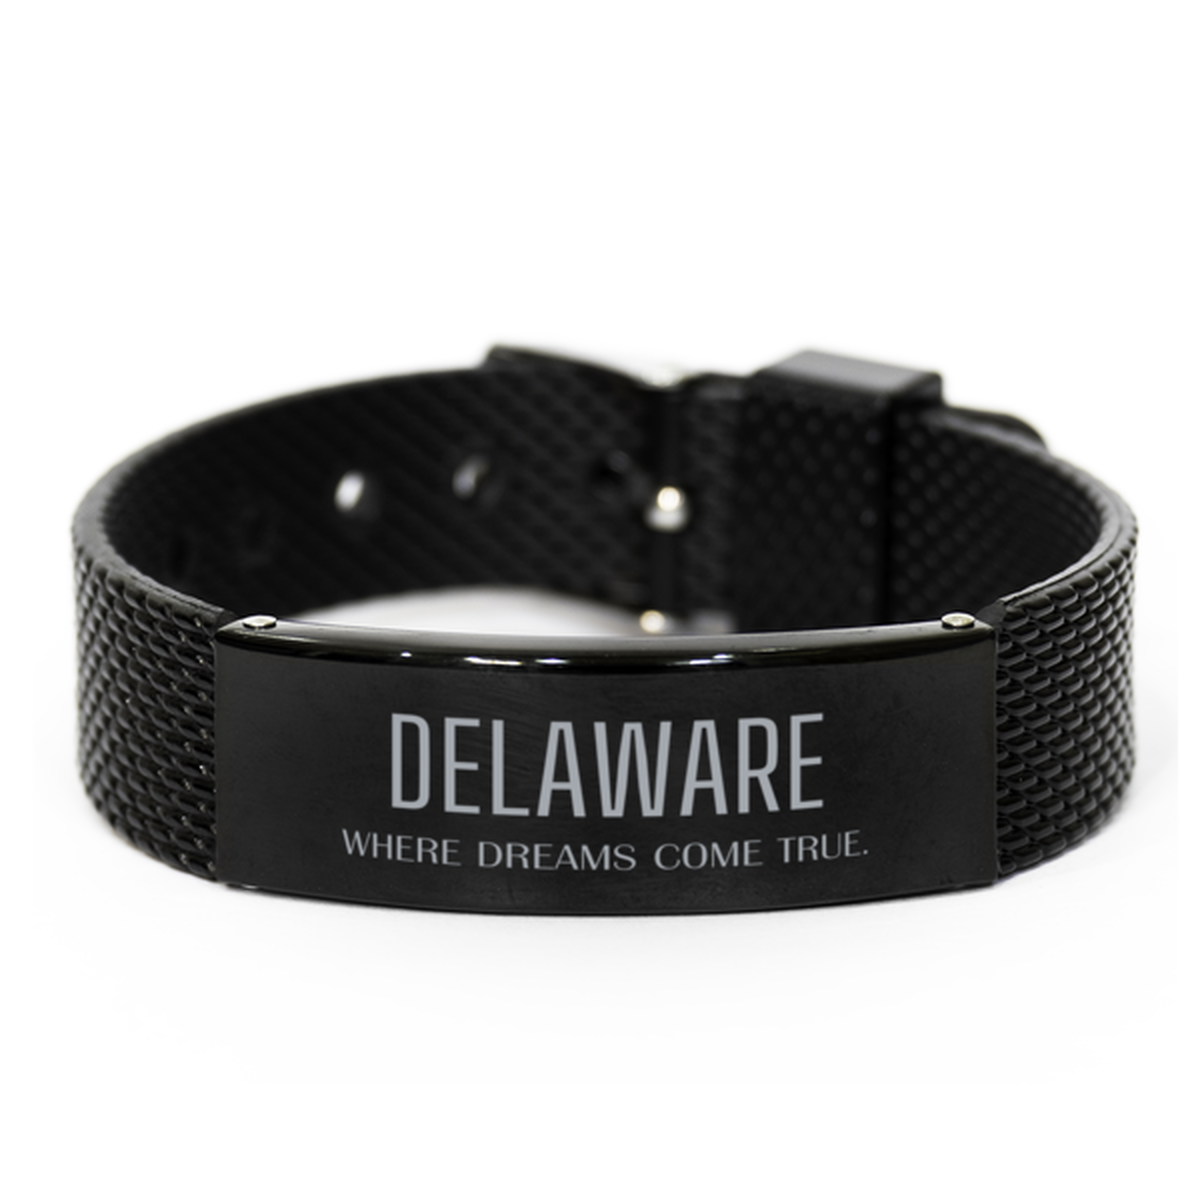 Love Delaware State Black Shark Mesh Bracelet, Delaware Where dreams come true, Birthday Inspirational Gifts For Delaware Men, Women, Friends